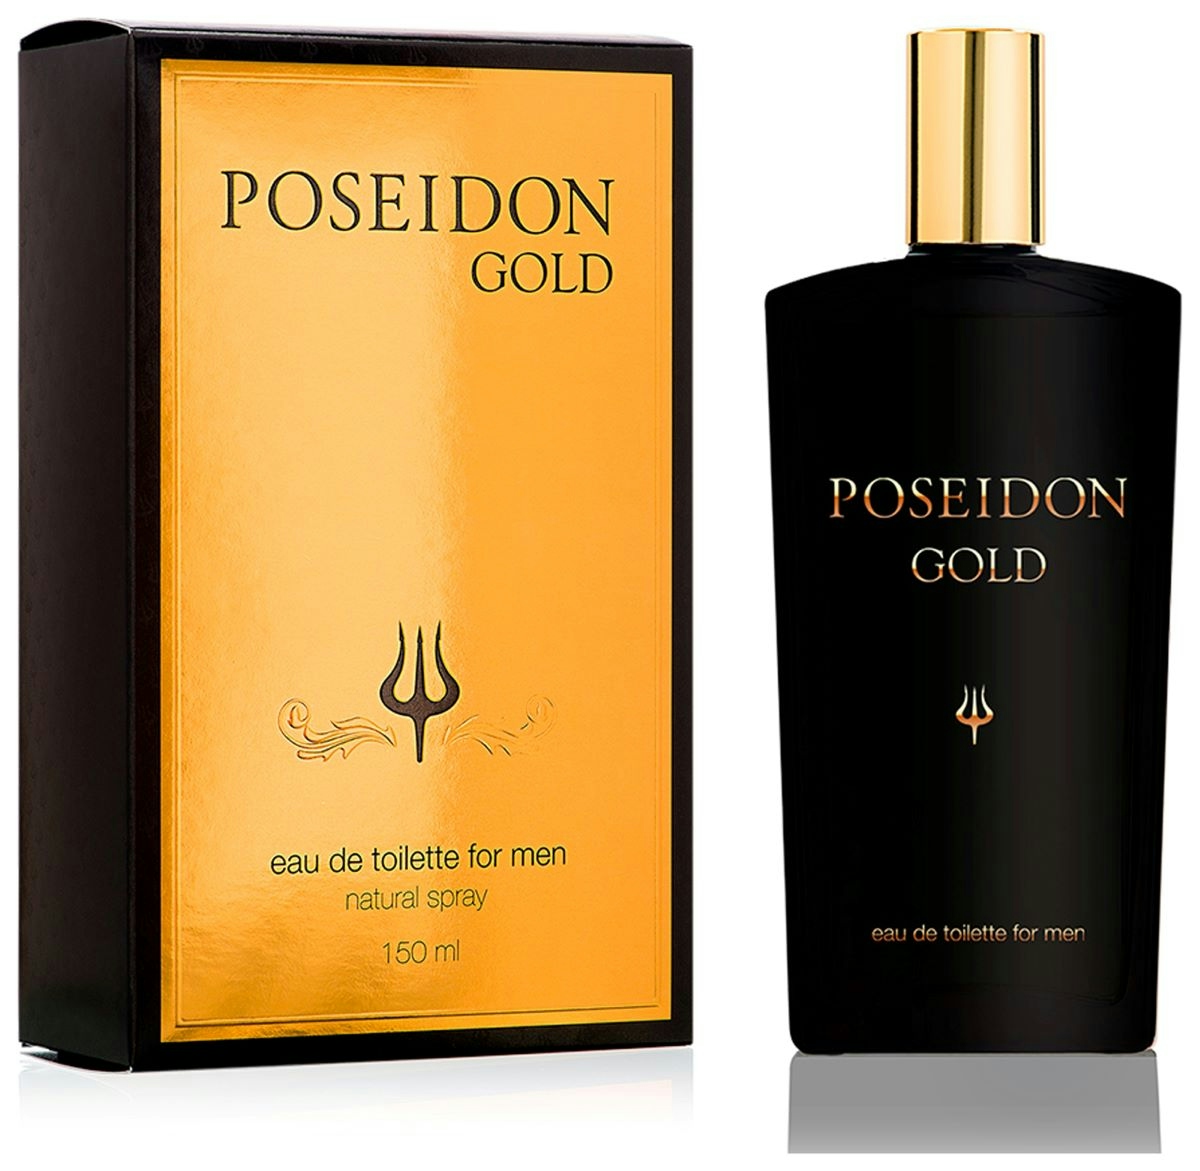 Colonia gold POSEIDON for men frasco 150 ml